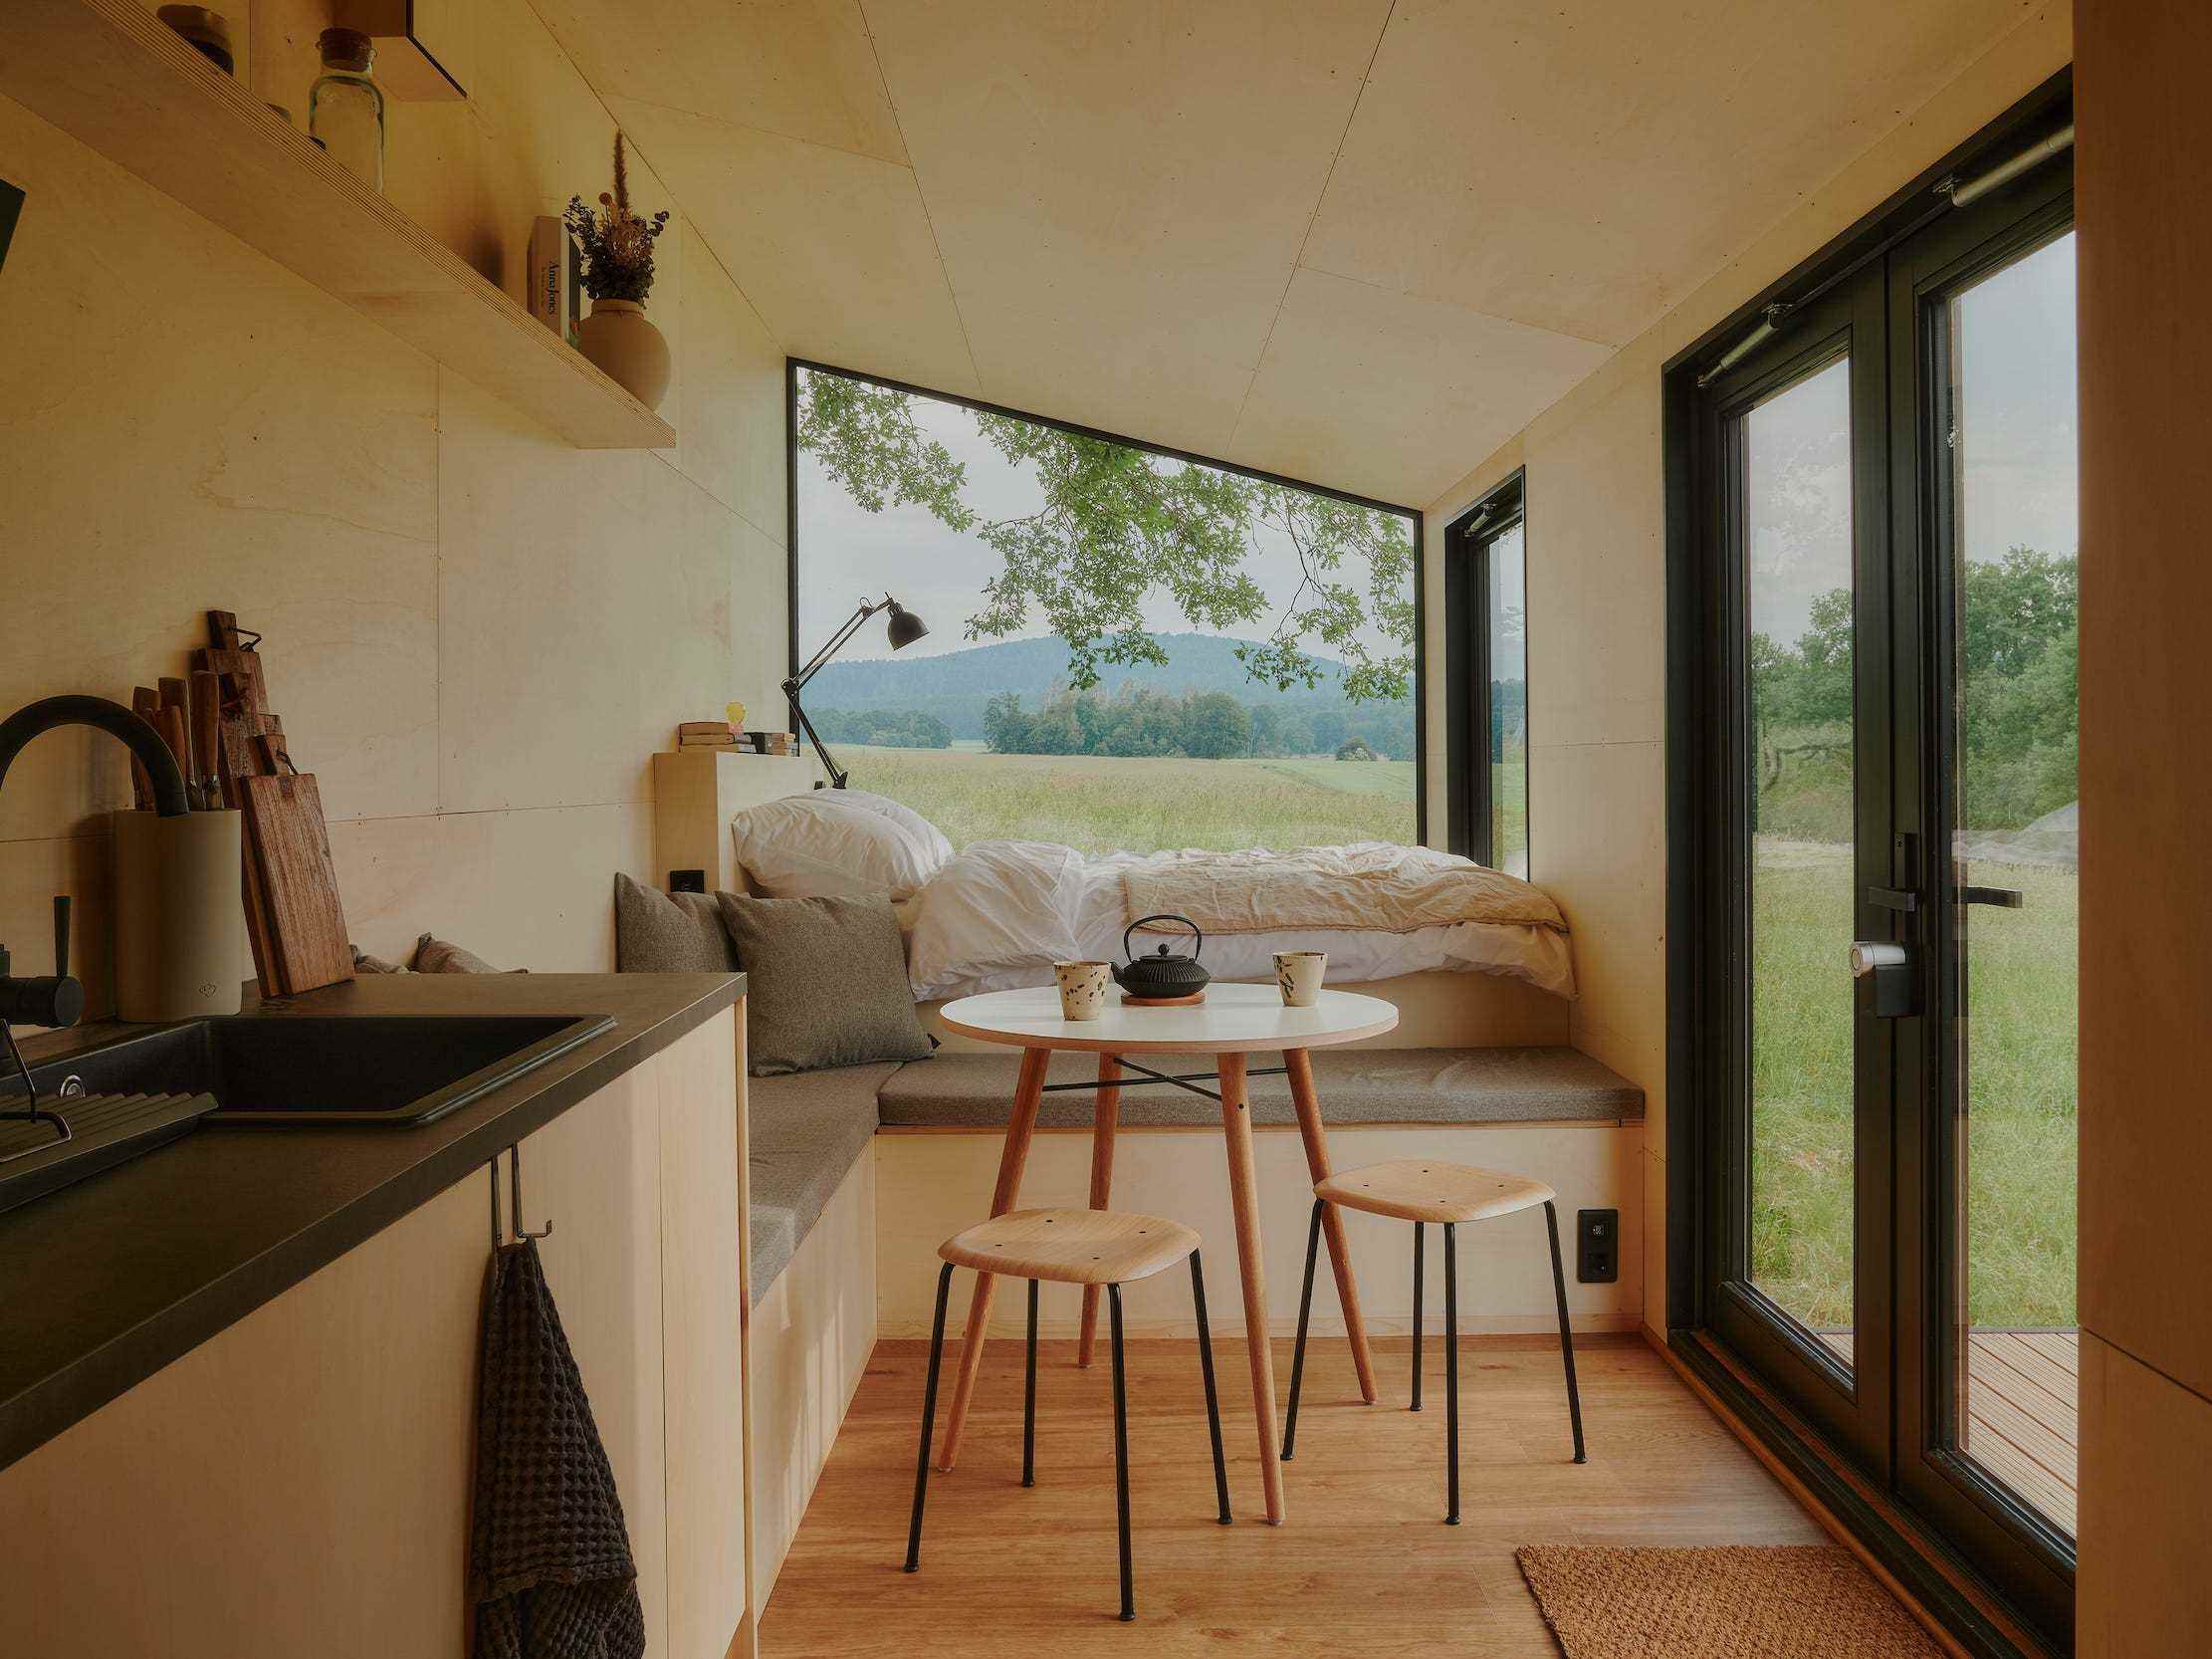 Blick in eine Raus-Hütte mit Bett, Esstisch, Küche, Fenster mit Blick in die Natur.